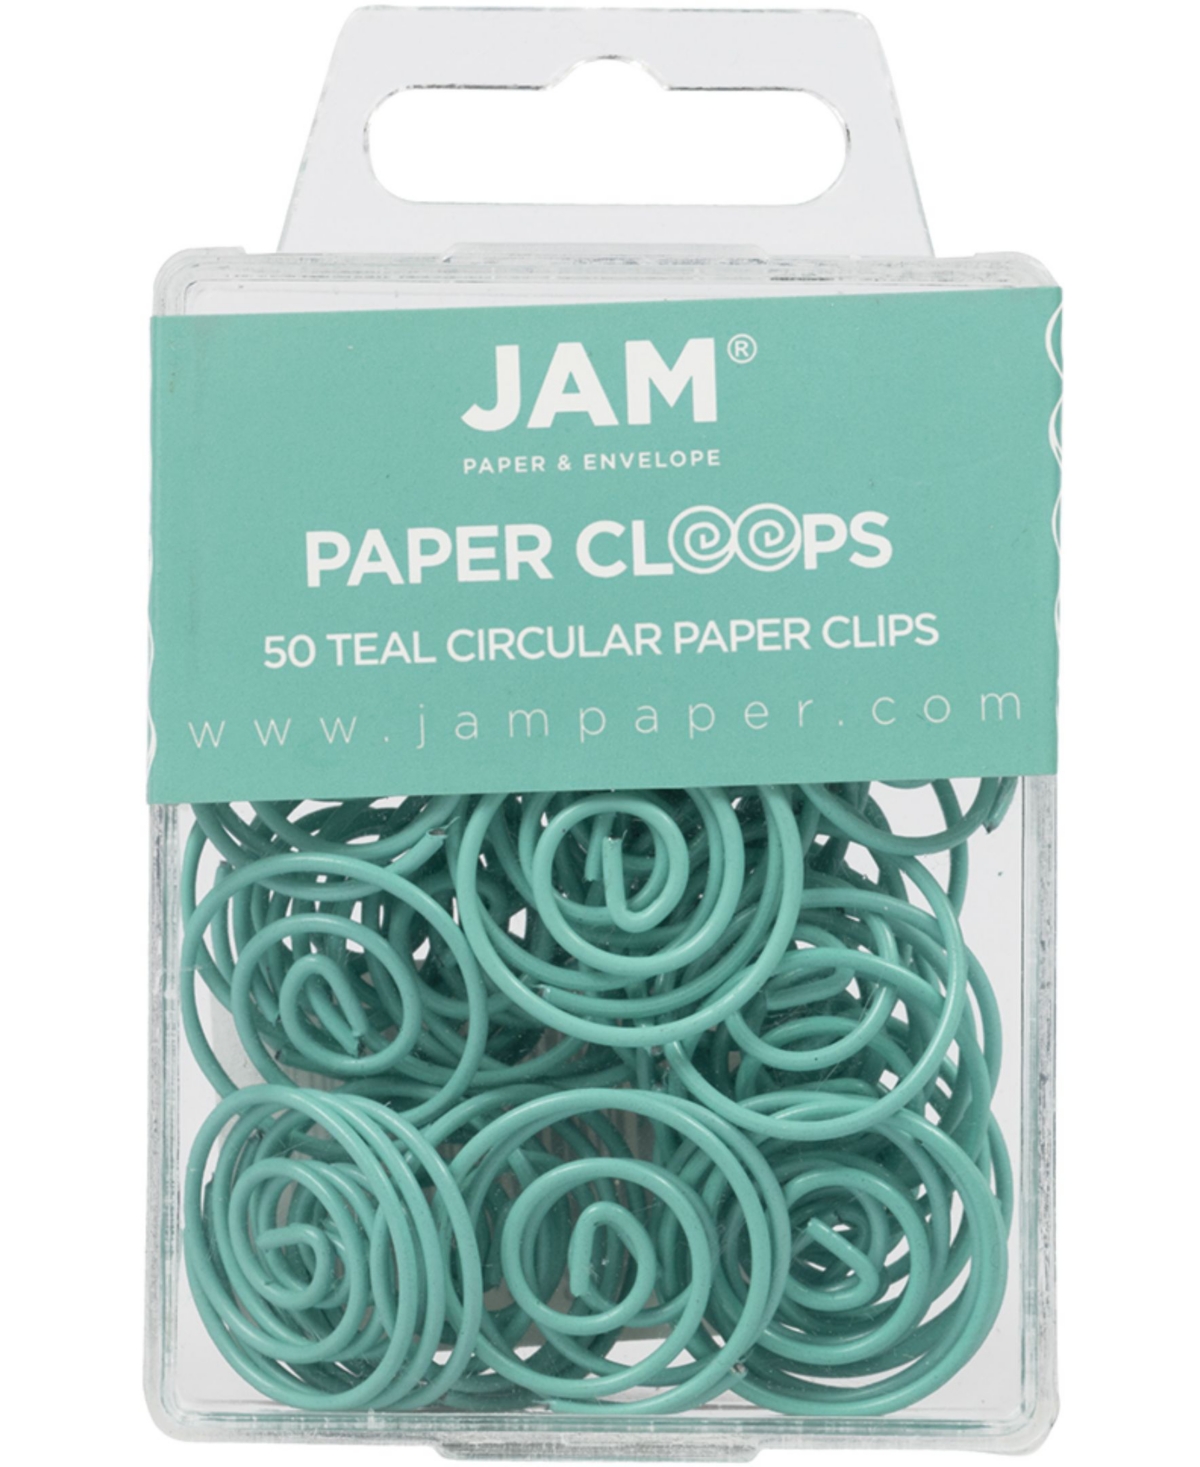 Jam Paper Circular Paper Clips In Teal